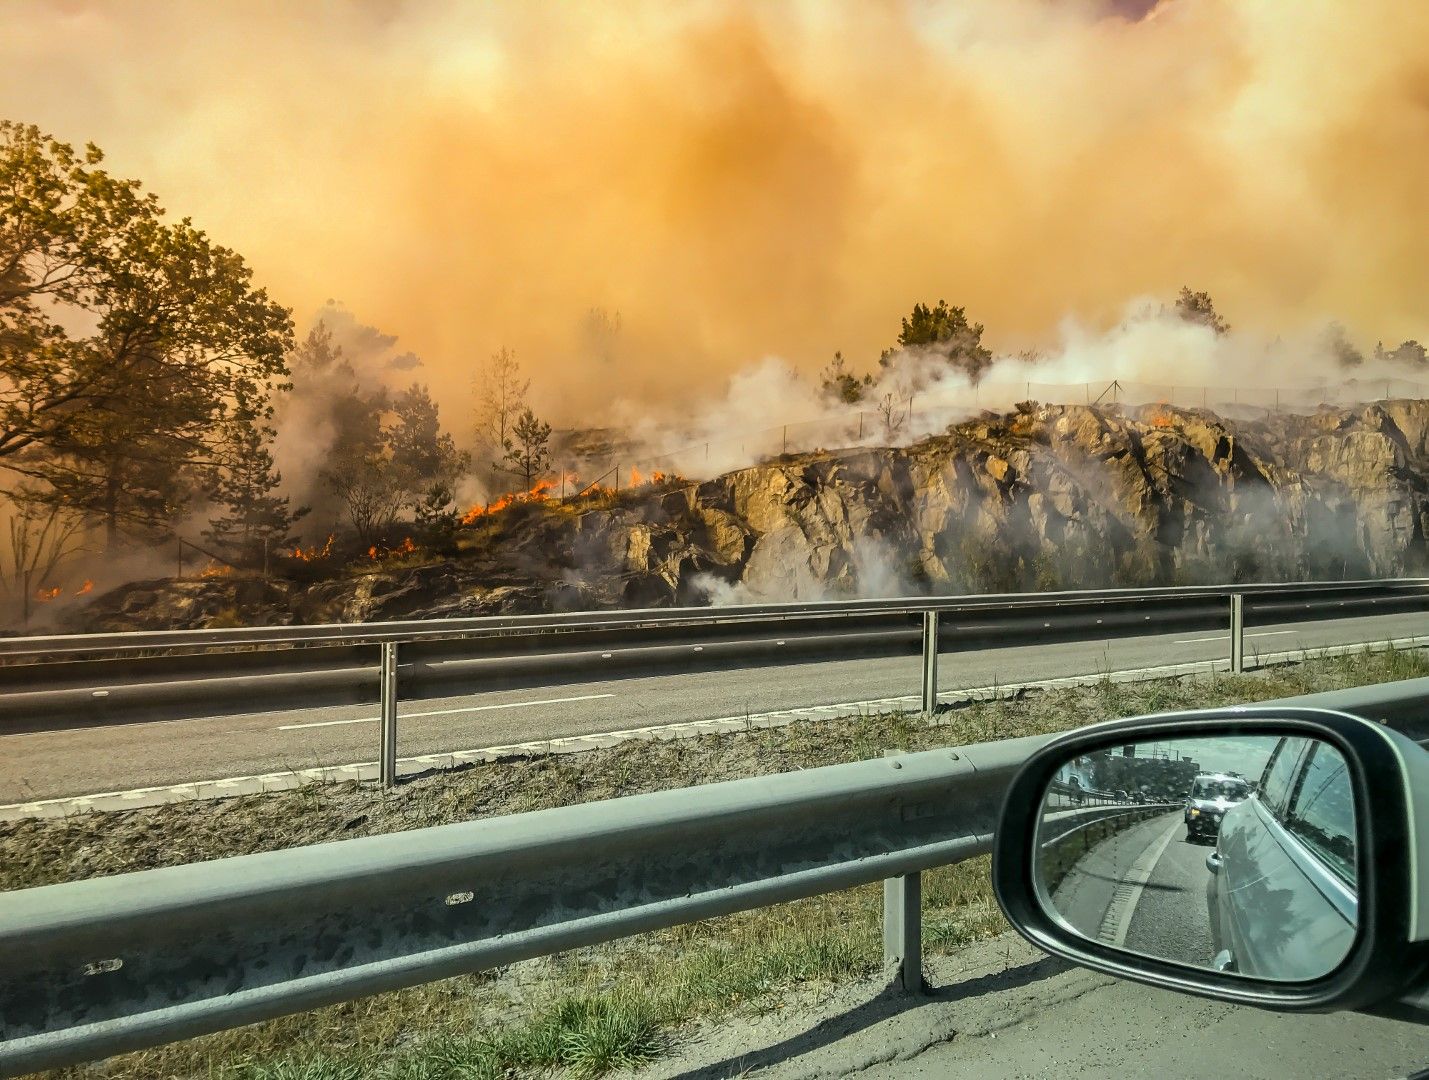 Миналогодишните пожари в Скандинавия през това лято са по-малко вероятни, според тази прогноза